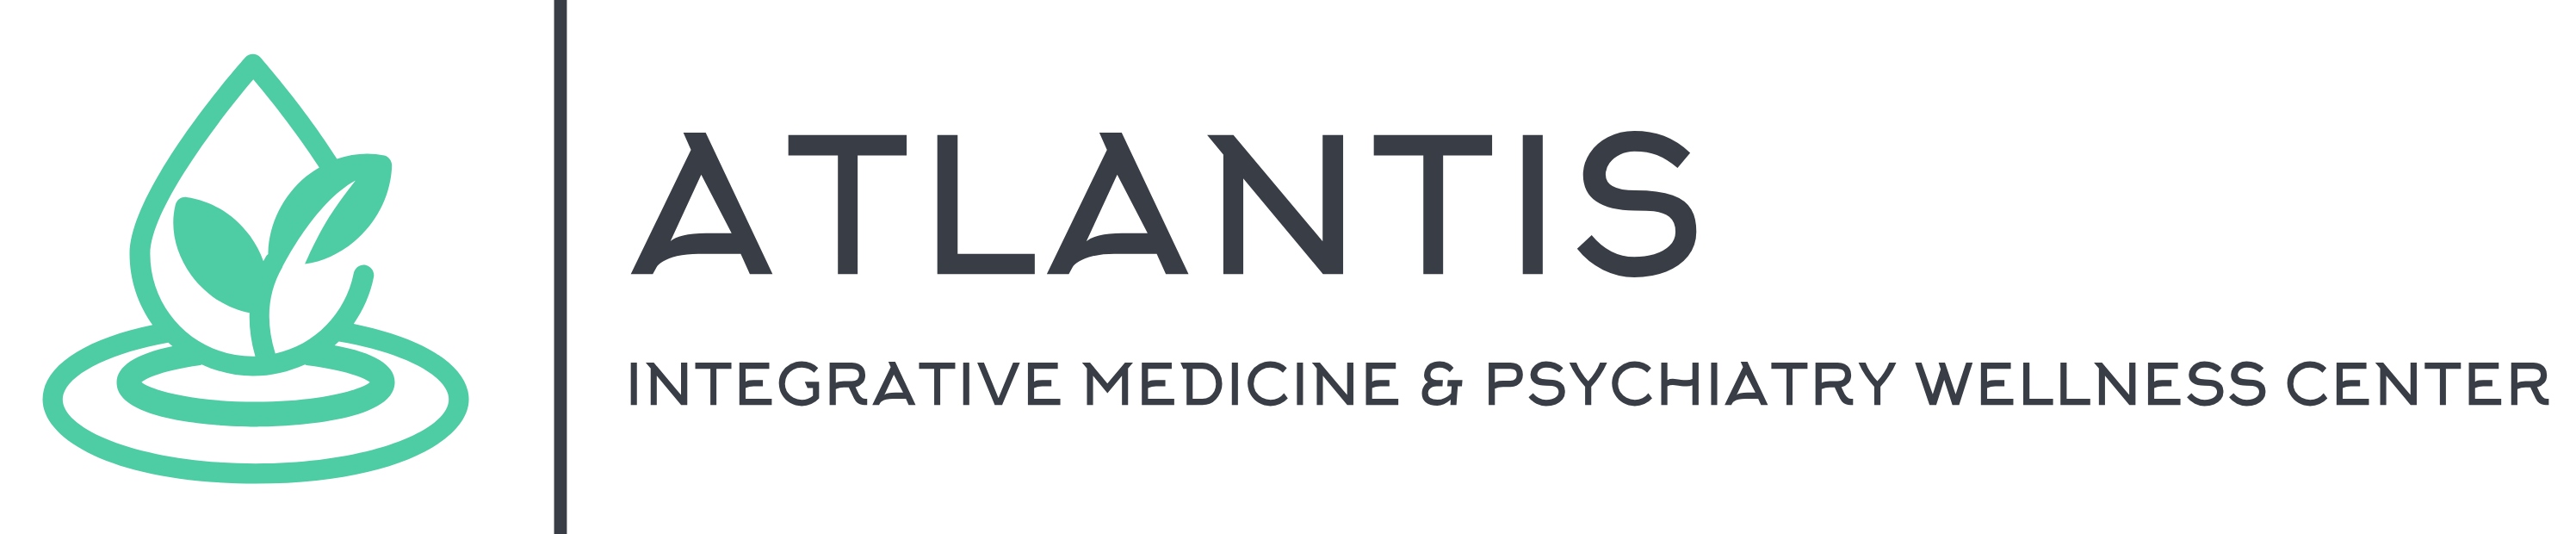 Atlantis Wellness Center